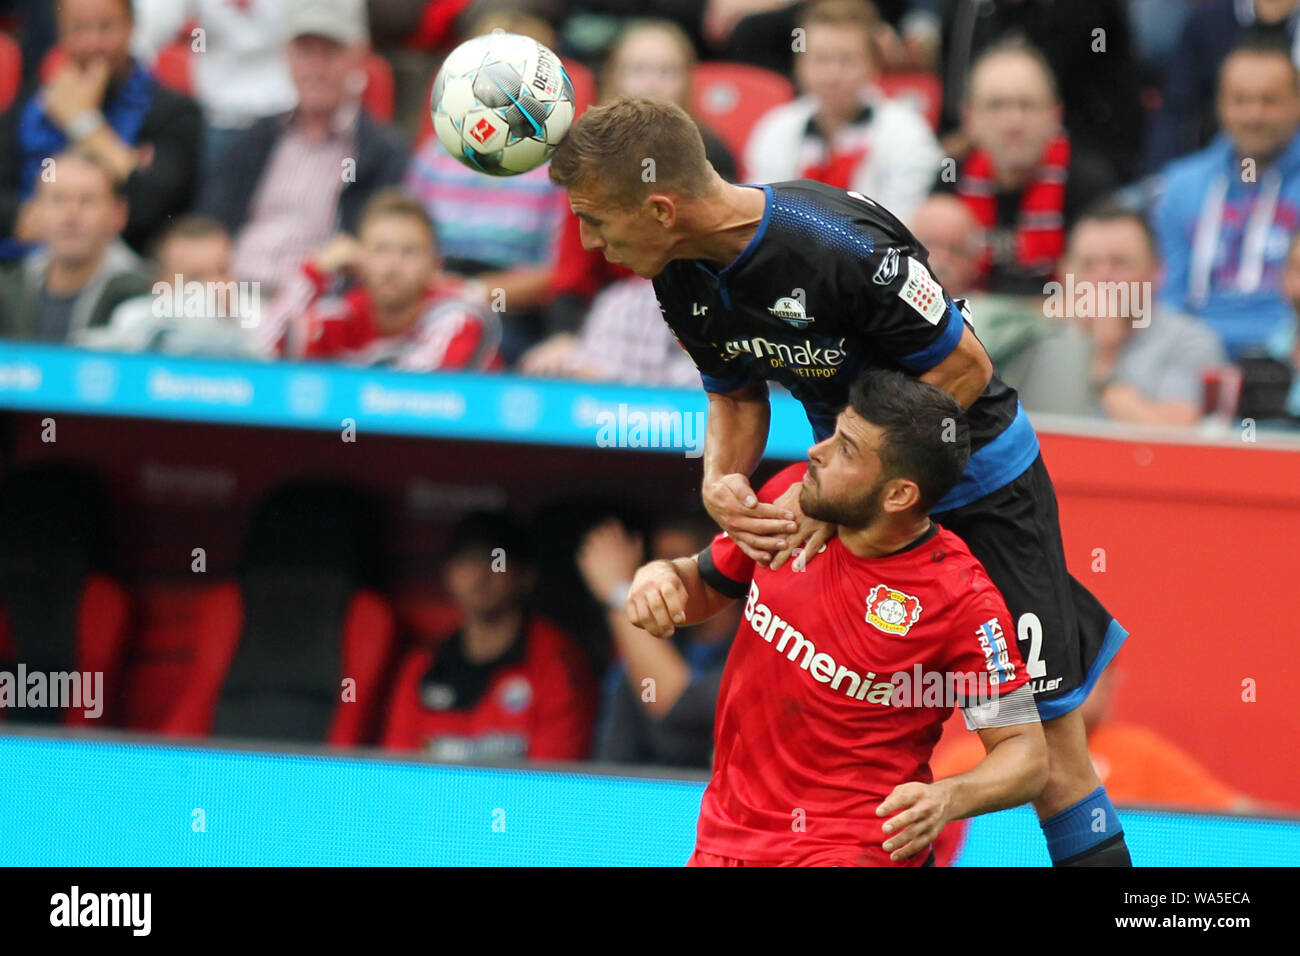 Uwe Huenemeier de SC Paderborn (R) et Kevin Volland de Leverkusen (L) bataille pour la balle durant le match de Bundesliga entre Bayer 04 Leverkusen et SC Paderborn au BayArena.(Score final : 3 - 2 Bayer Paderbon) Banque D'Images